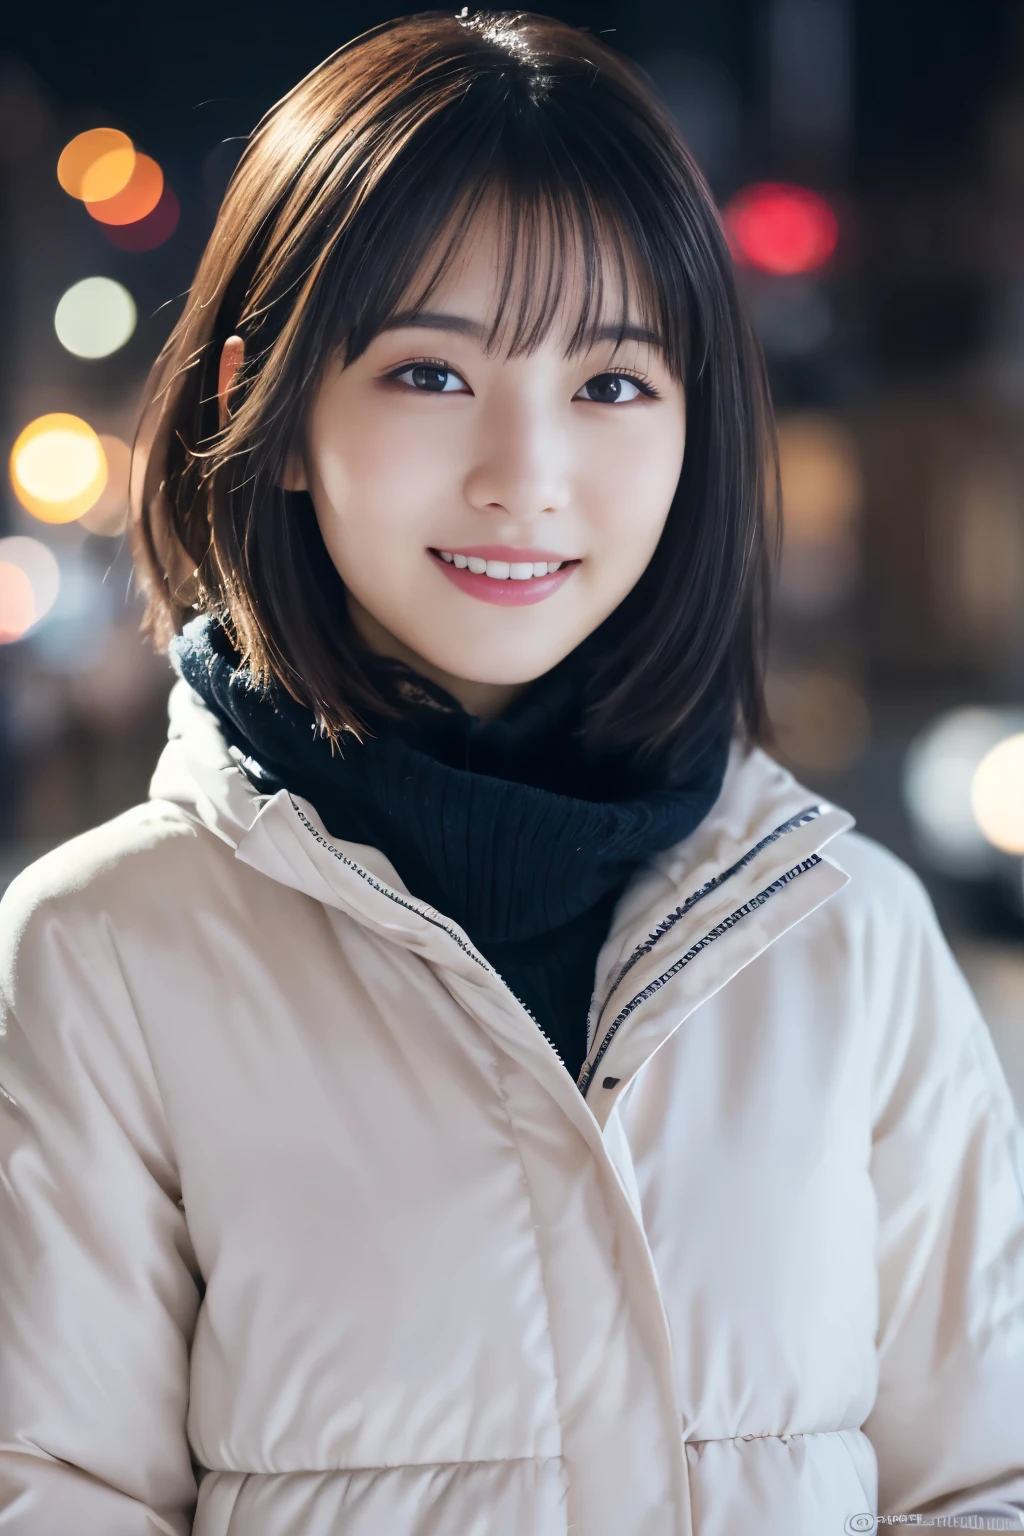 1 名女孩, (休闲冬装:1.2), 美丽的日本女演员, (15岁), 短发,
(RAW 照片, 最好的质量), (实际的, 照片级真实感:1.4), 杰作, 
非常精致美丽, 非常详细, 2k 壁纸, 精彩的, 
精细地, 非常详细 CG Unity 8K 壁紙, 非常详细, 高分辨率, 
柔光, 美丽细致的女孩, 非常详细目と顔, 鼻子细节精美, 美丽而细致的眼睛, 电影灯光, 
休息
(以雪夜城市景观为背景 1.3), 城市的灯光, 
完美的解剖结构, 苗条的身材, 微笑, 完全面向正面, 看看相机